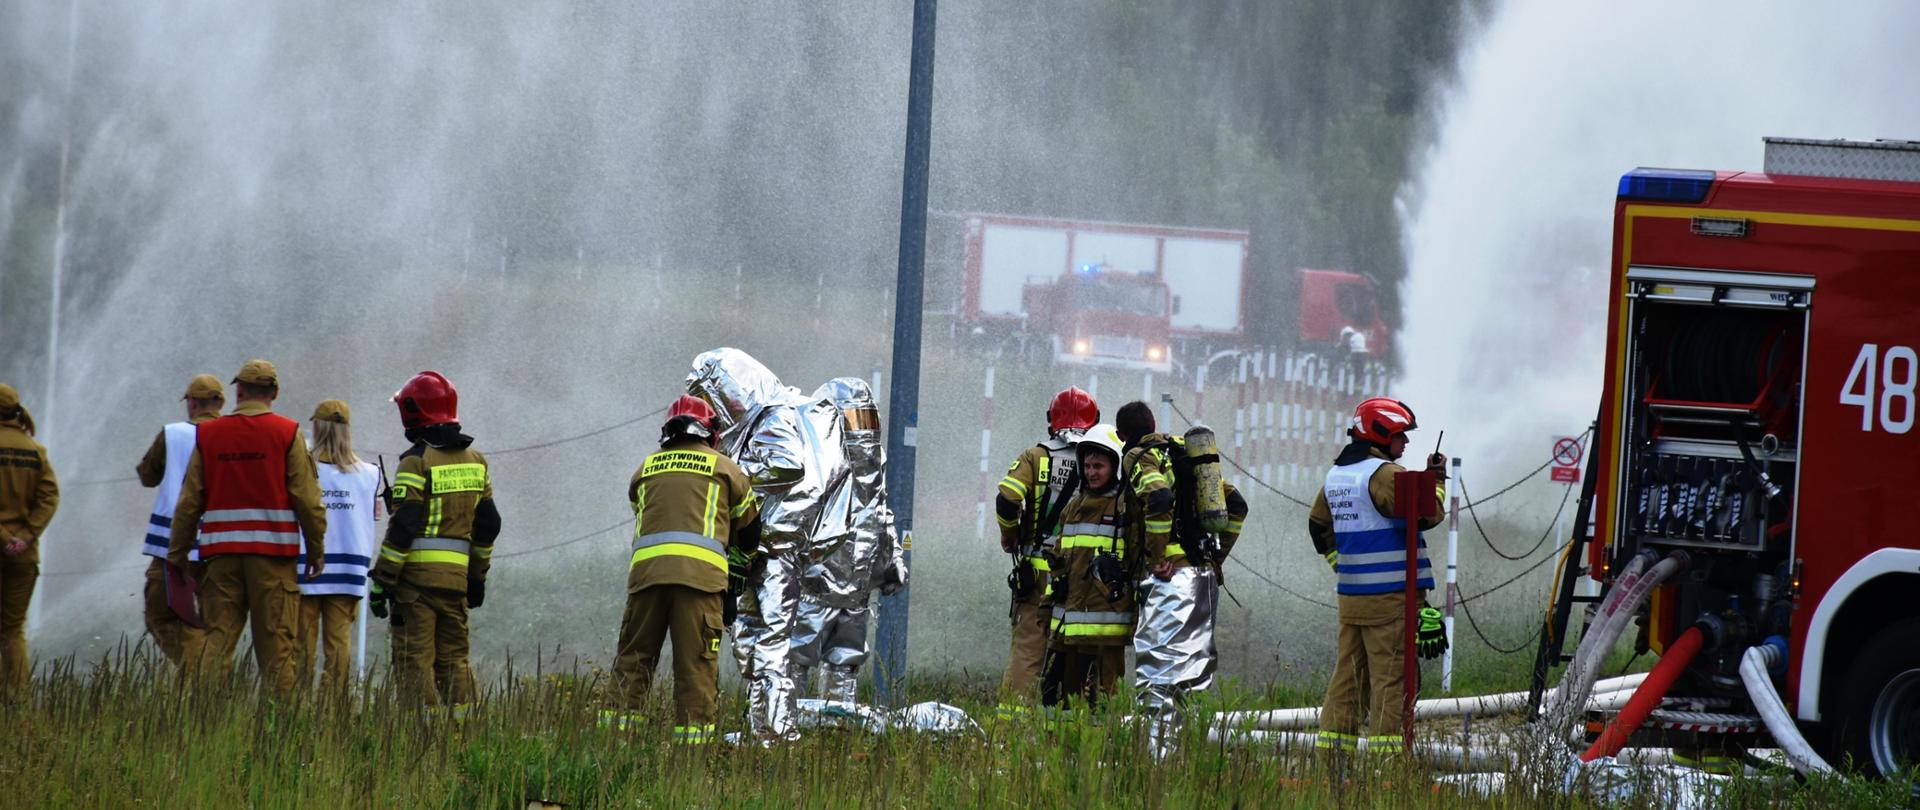 Widok na ubierających się strażaków w ubrania żaroochronne i pracę strażaków w ochronie przed oddziaływaniem termicznym.